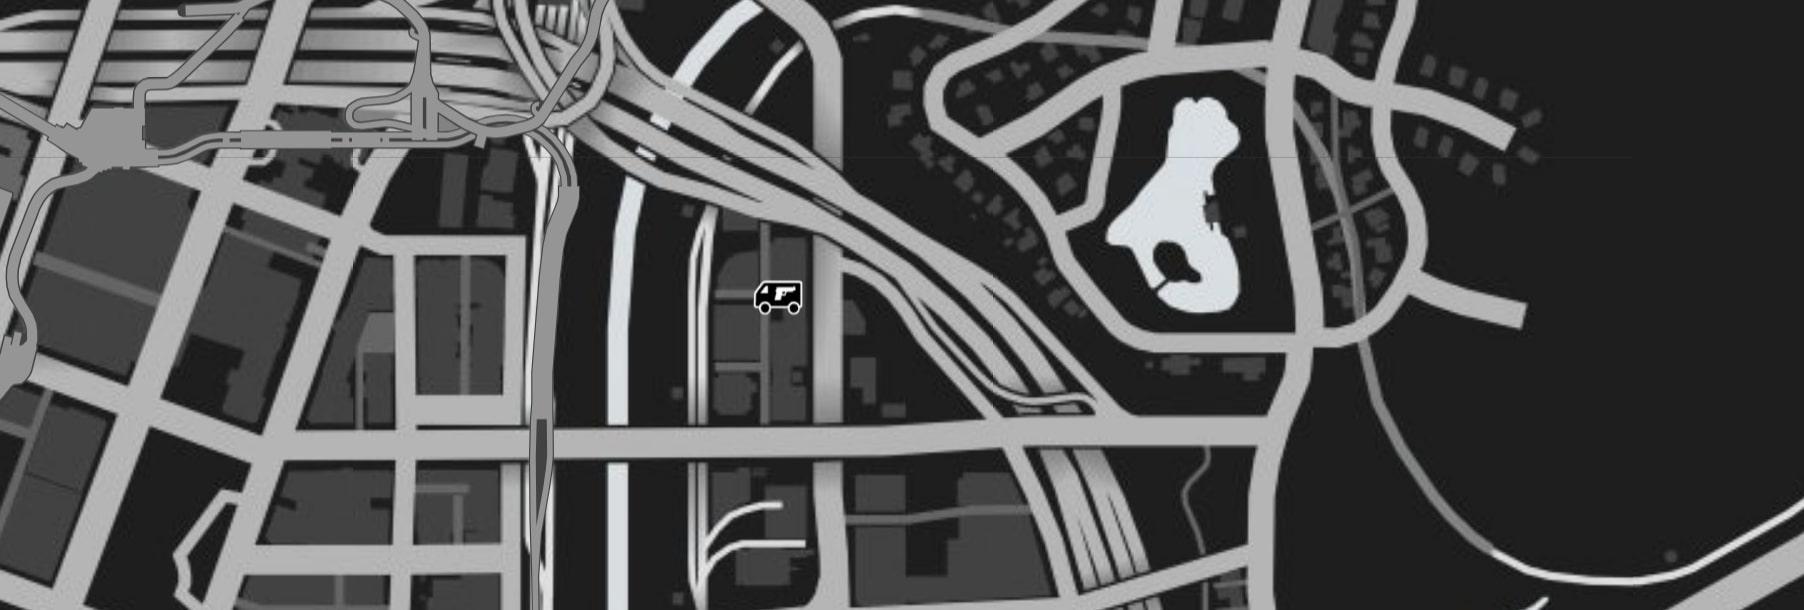 GTA Online gun van location on mini-map near Del Perro Freeway